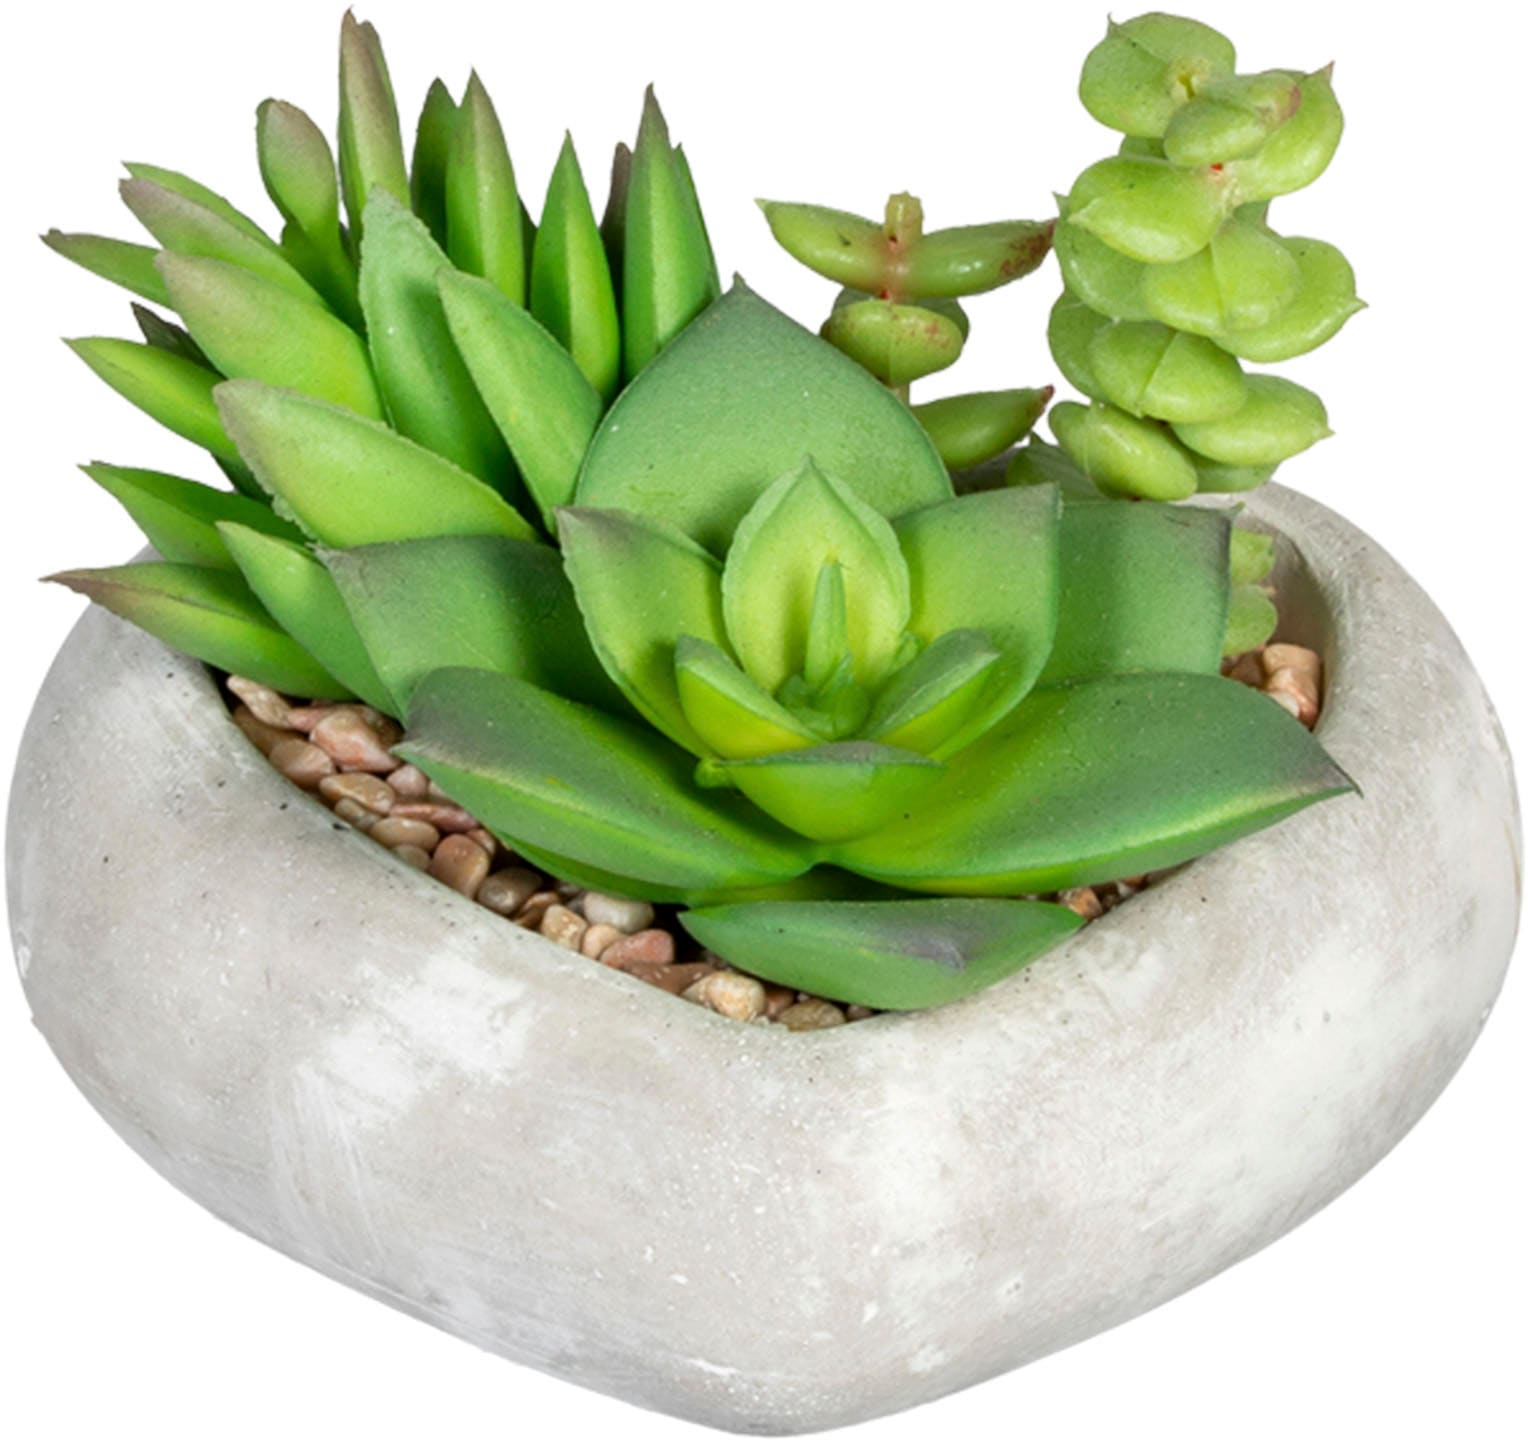 Creativ green Künstliche Zimmerpflanze »Sukkulentenarrangement«, in Zementschale, 3er Set